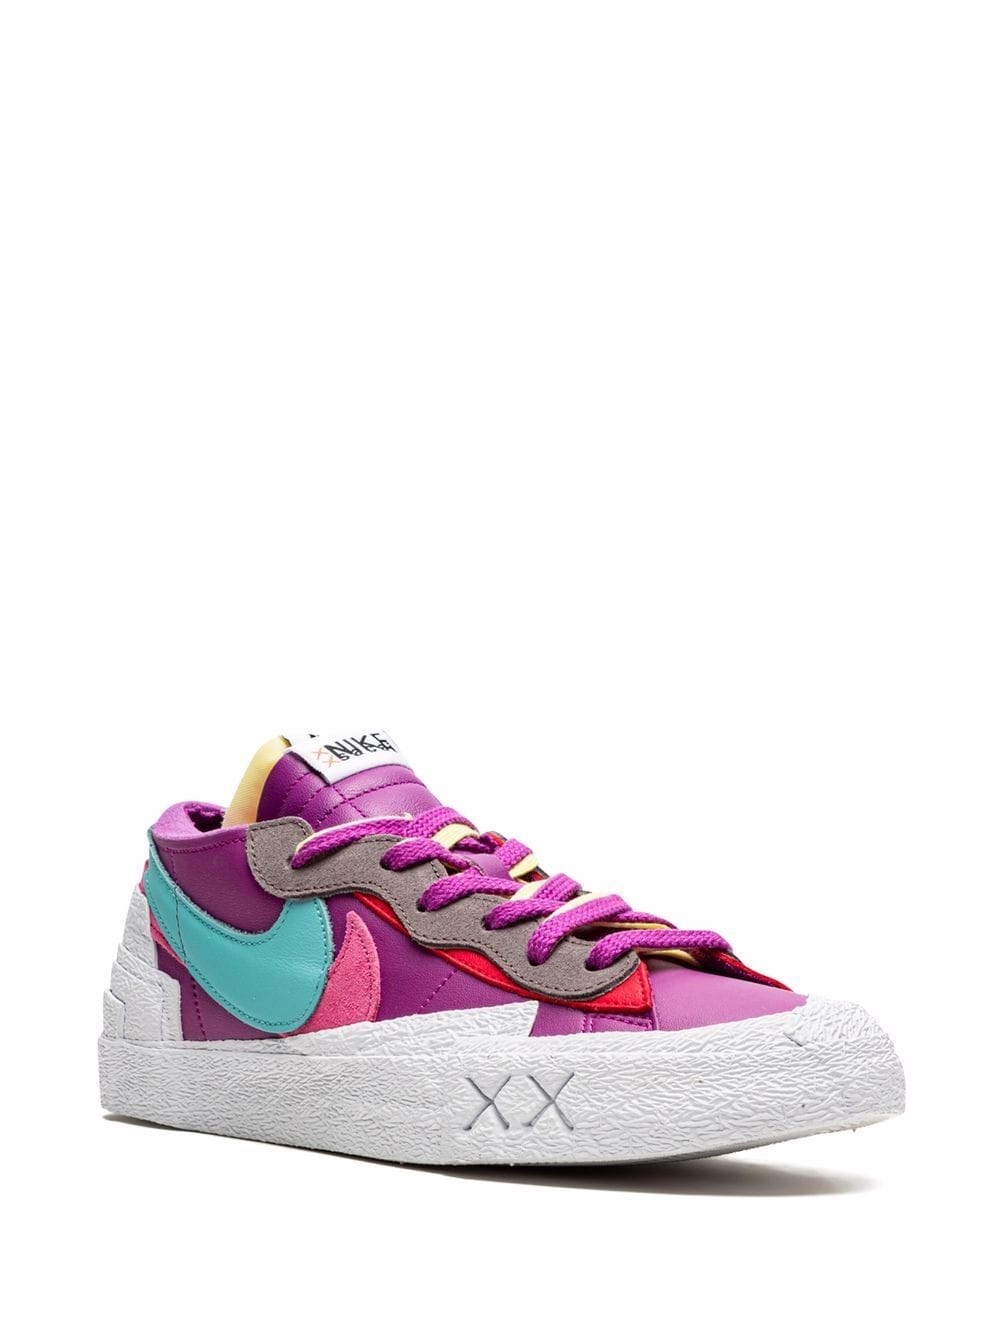 x sacai x KAWS x Blazer Low "Purple Dusk" sneakers - 2